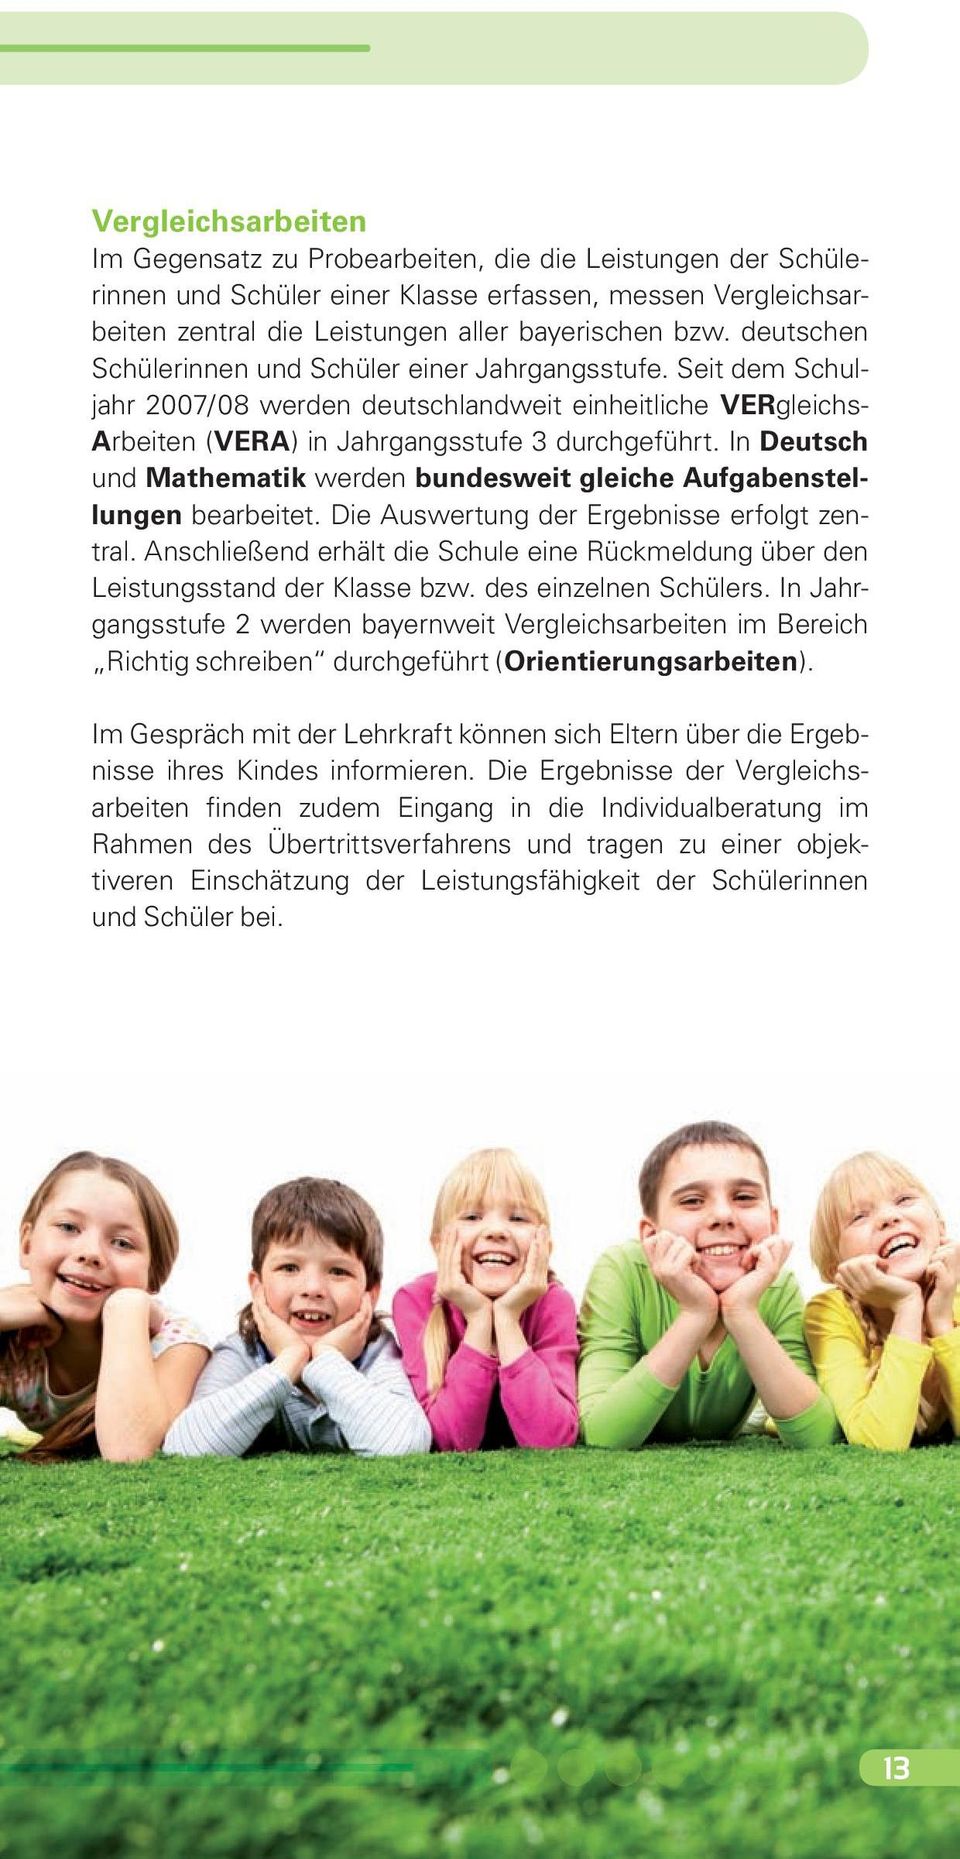 In Deutsch und Mathematik werden bundesweit gleiche Aufgabenstellungen bearbeitet. Die Auswertung der Ergebnisse erfolgt zentral.